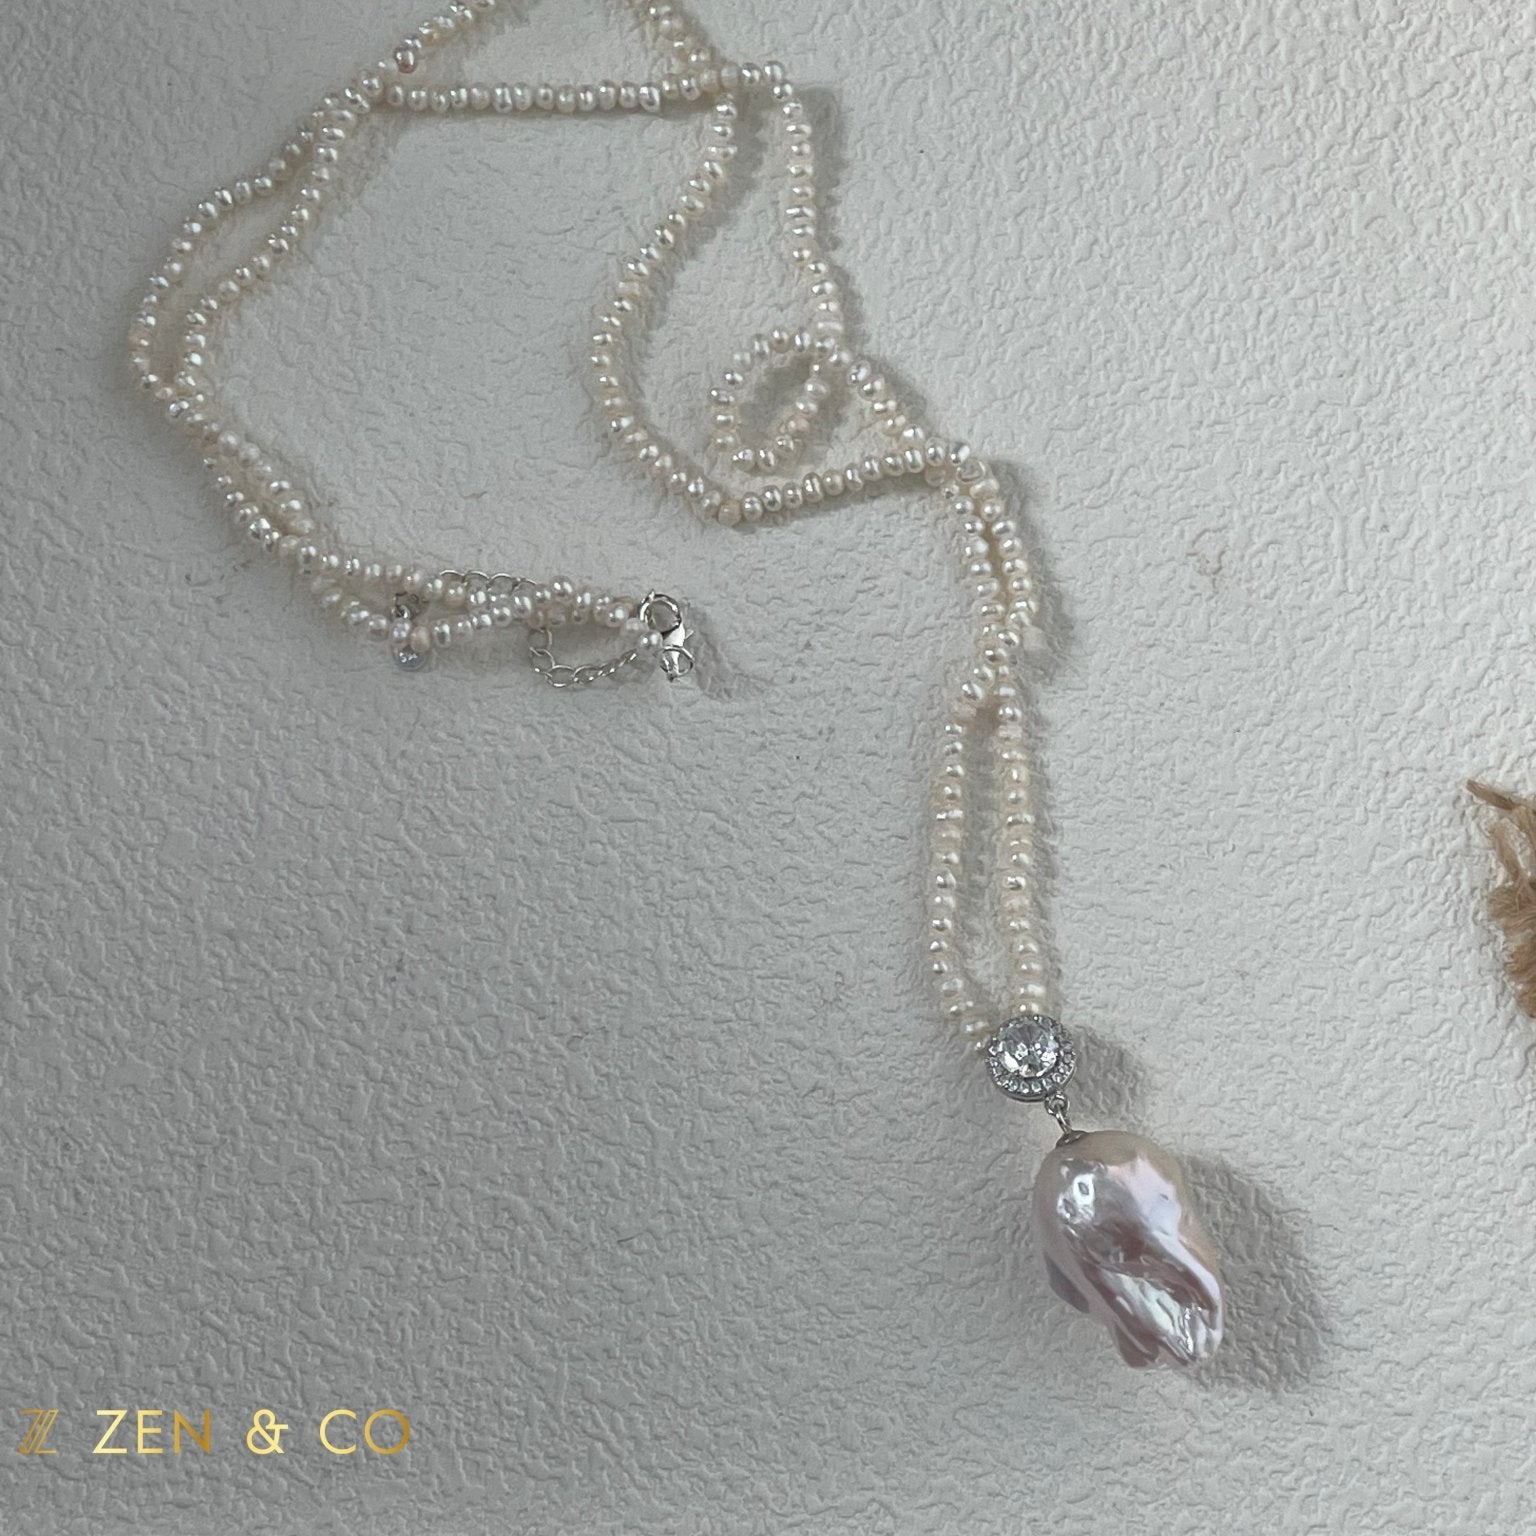 FELICITY Baroque pearl pendant beaded necklace - ZEN&CO Studio